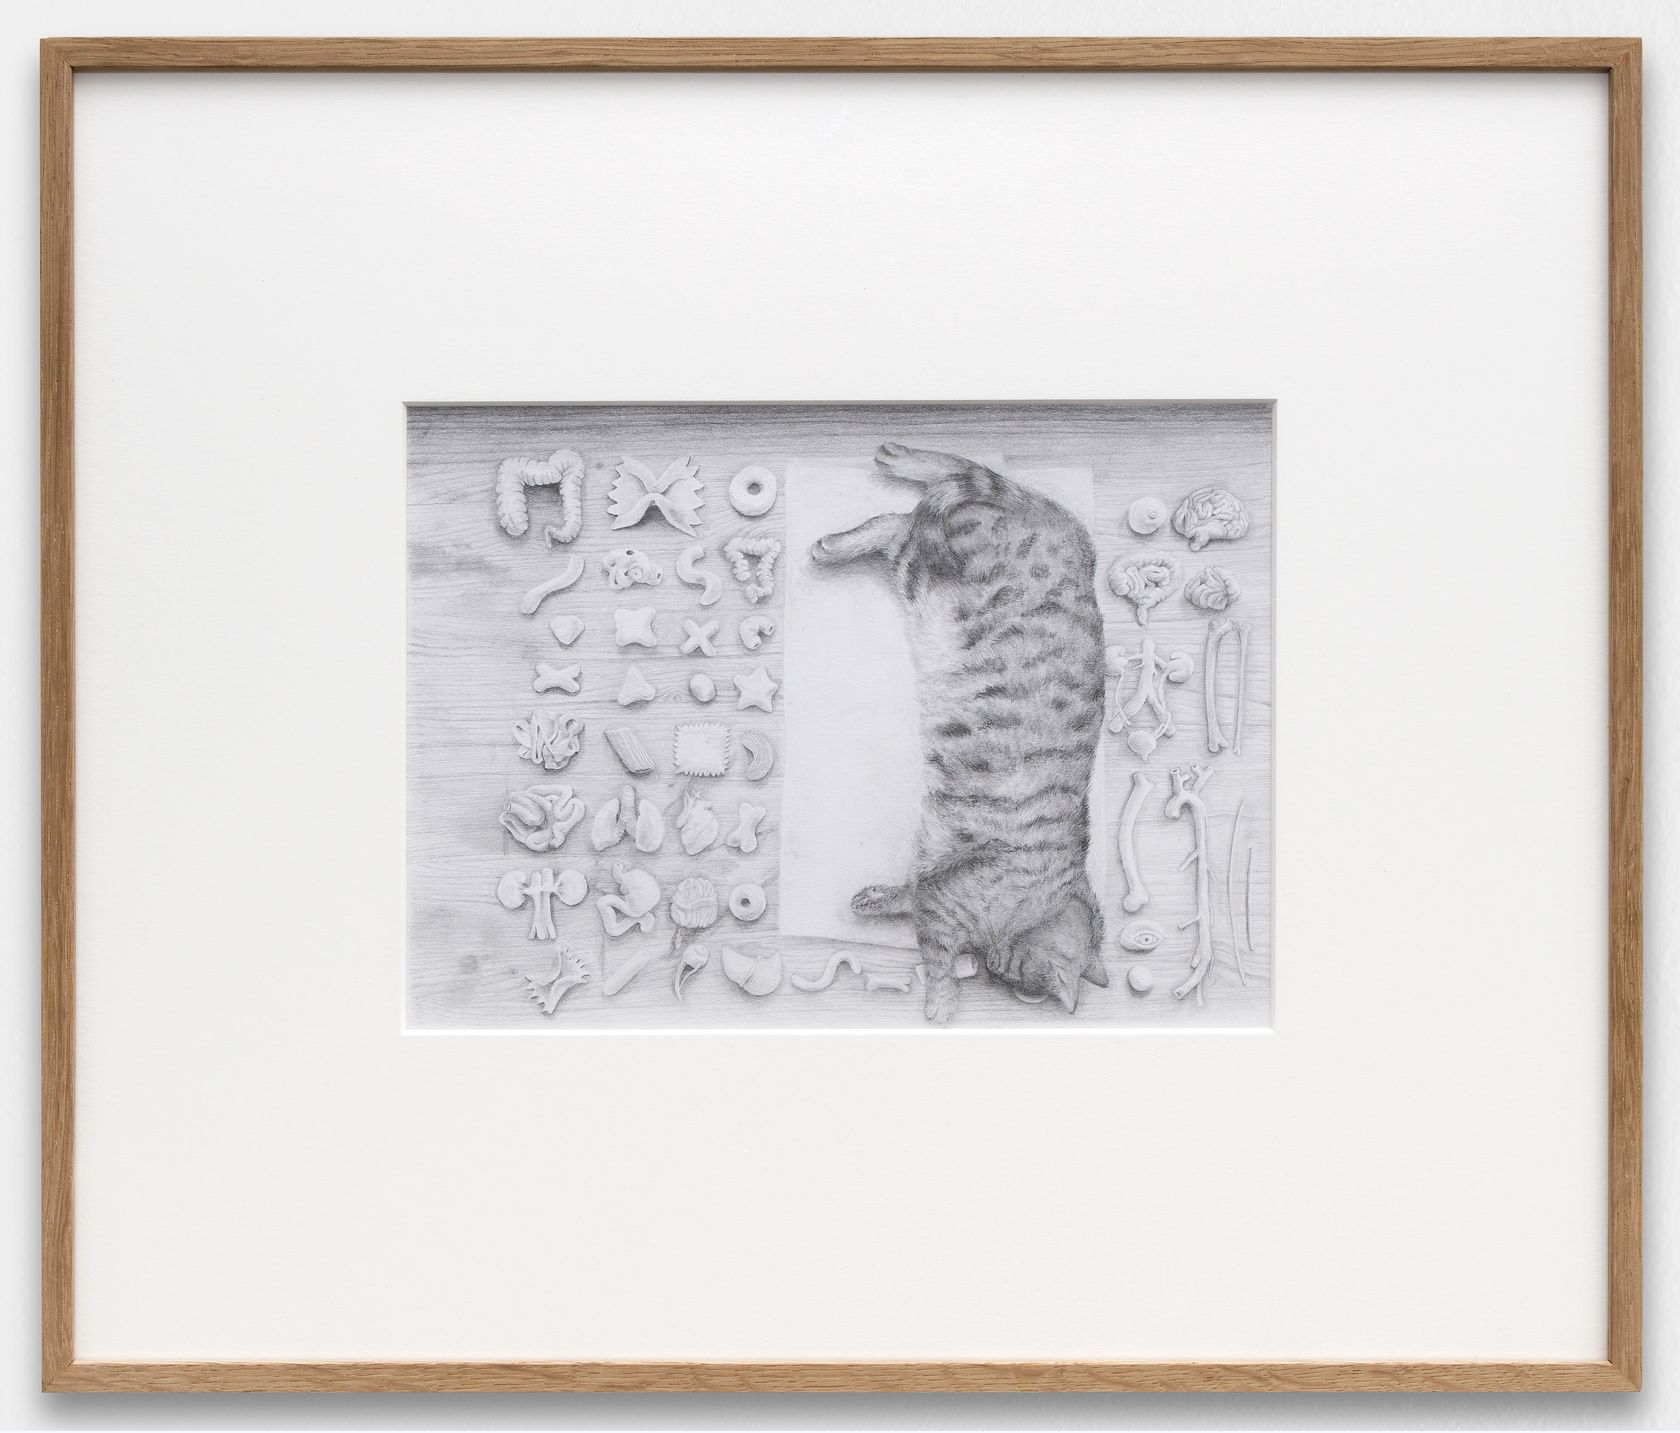 Laurent Le Deunff, Grelot, 2020 Crayon sur papier20 × 27 cm / 7 7/8 × 10 5/8 in. | 42 × 49.5 × 2.5 cm / 16 1/2 × 19 1/2 × 1  in. (encadré/framed)